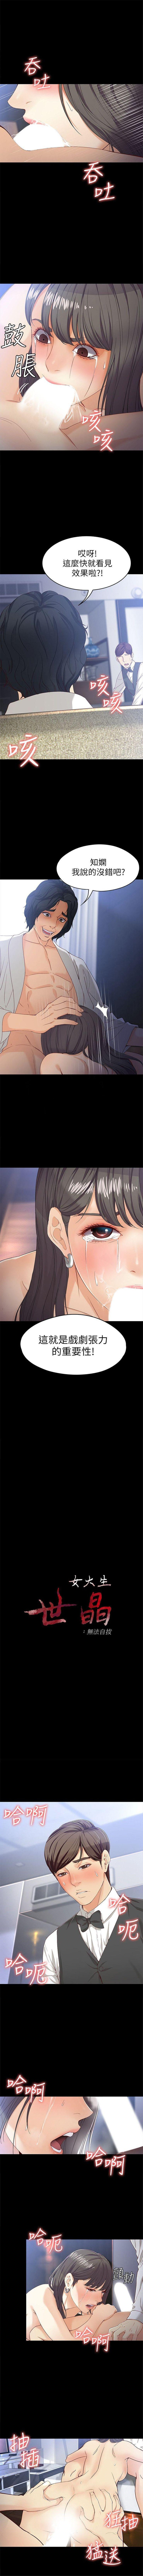 女大生世晶:无法自拔 1-56 中文翻译 （完结） 181